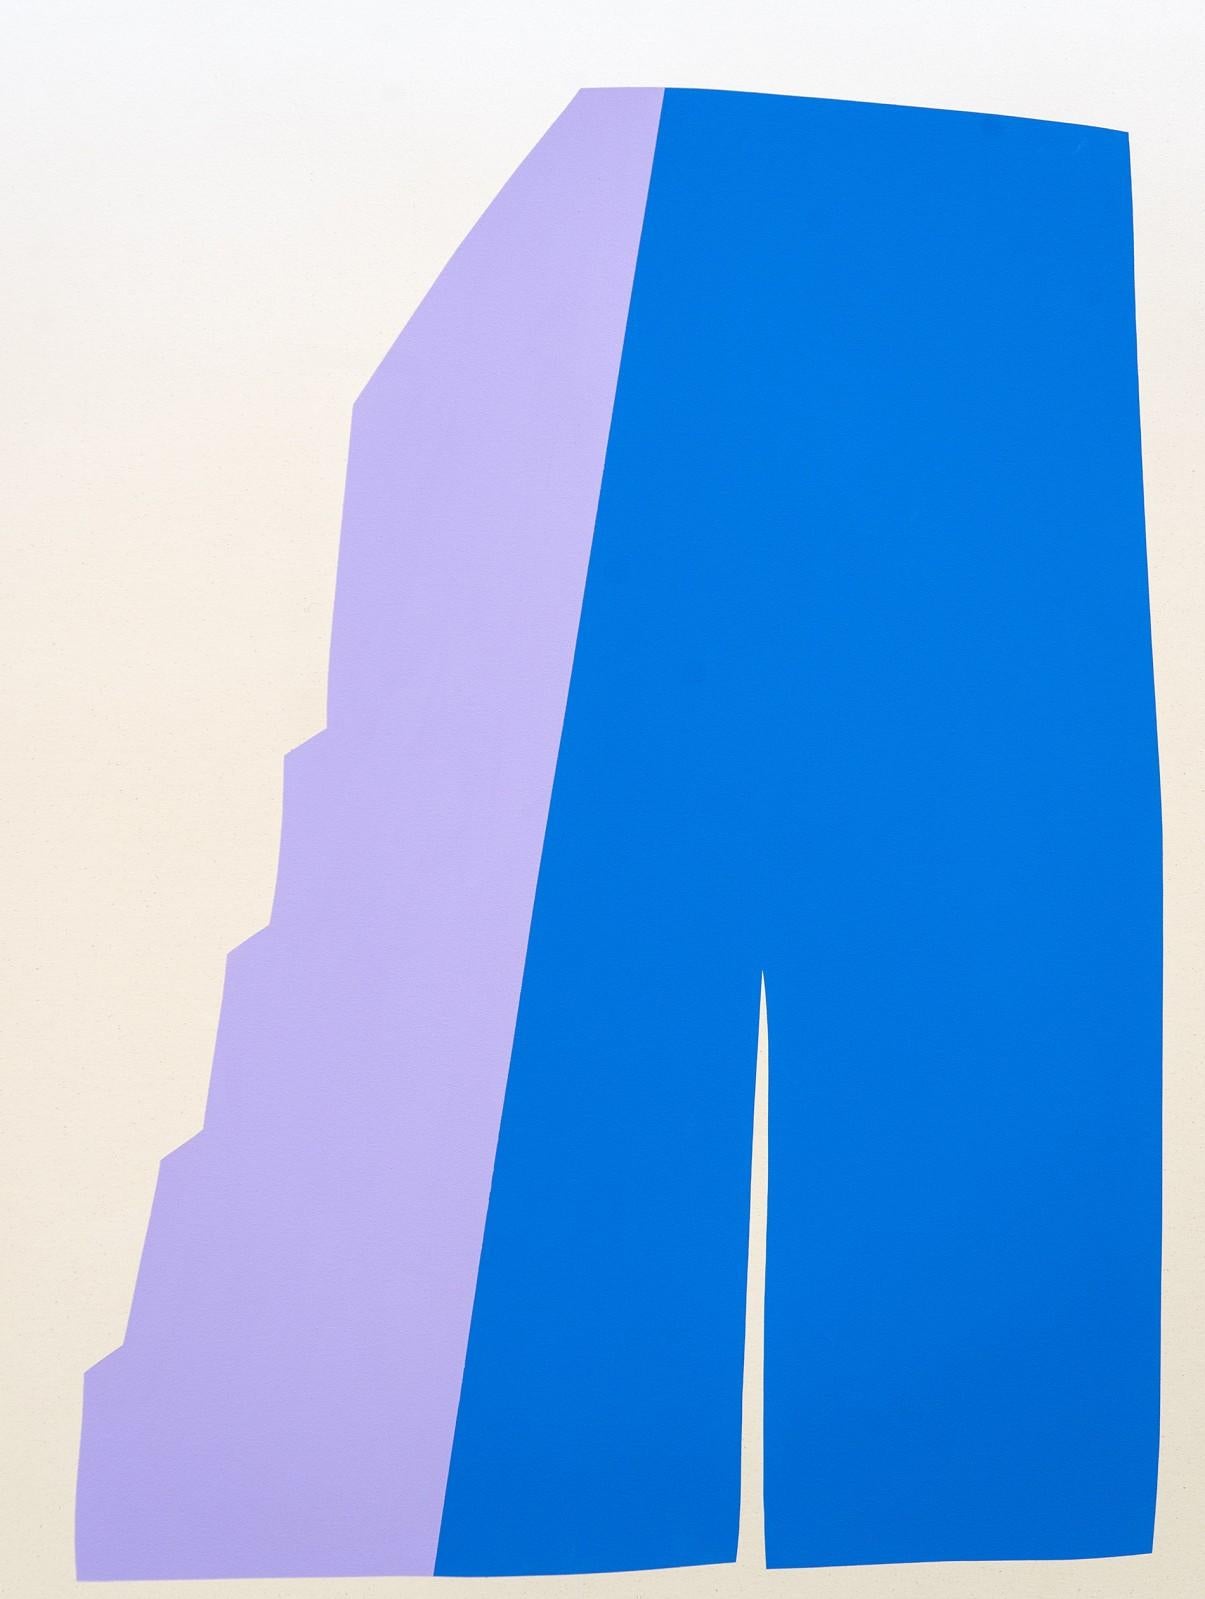 Grande toile acrylique sur toile bleue et lavande avec un soleil délavé - colorée et abstraite - Violet Abstract Painting par Aron Hill